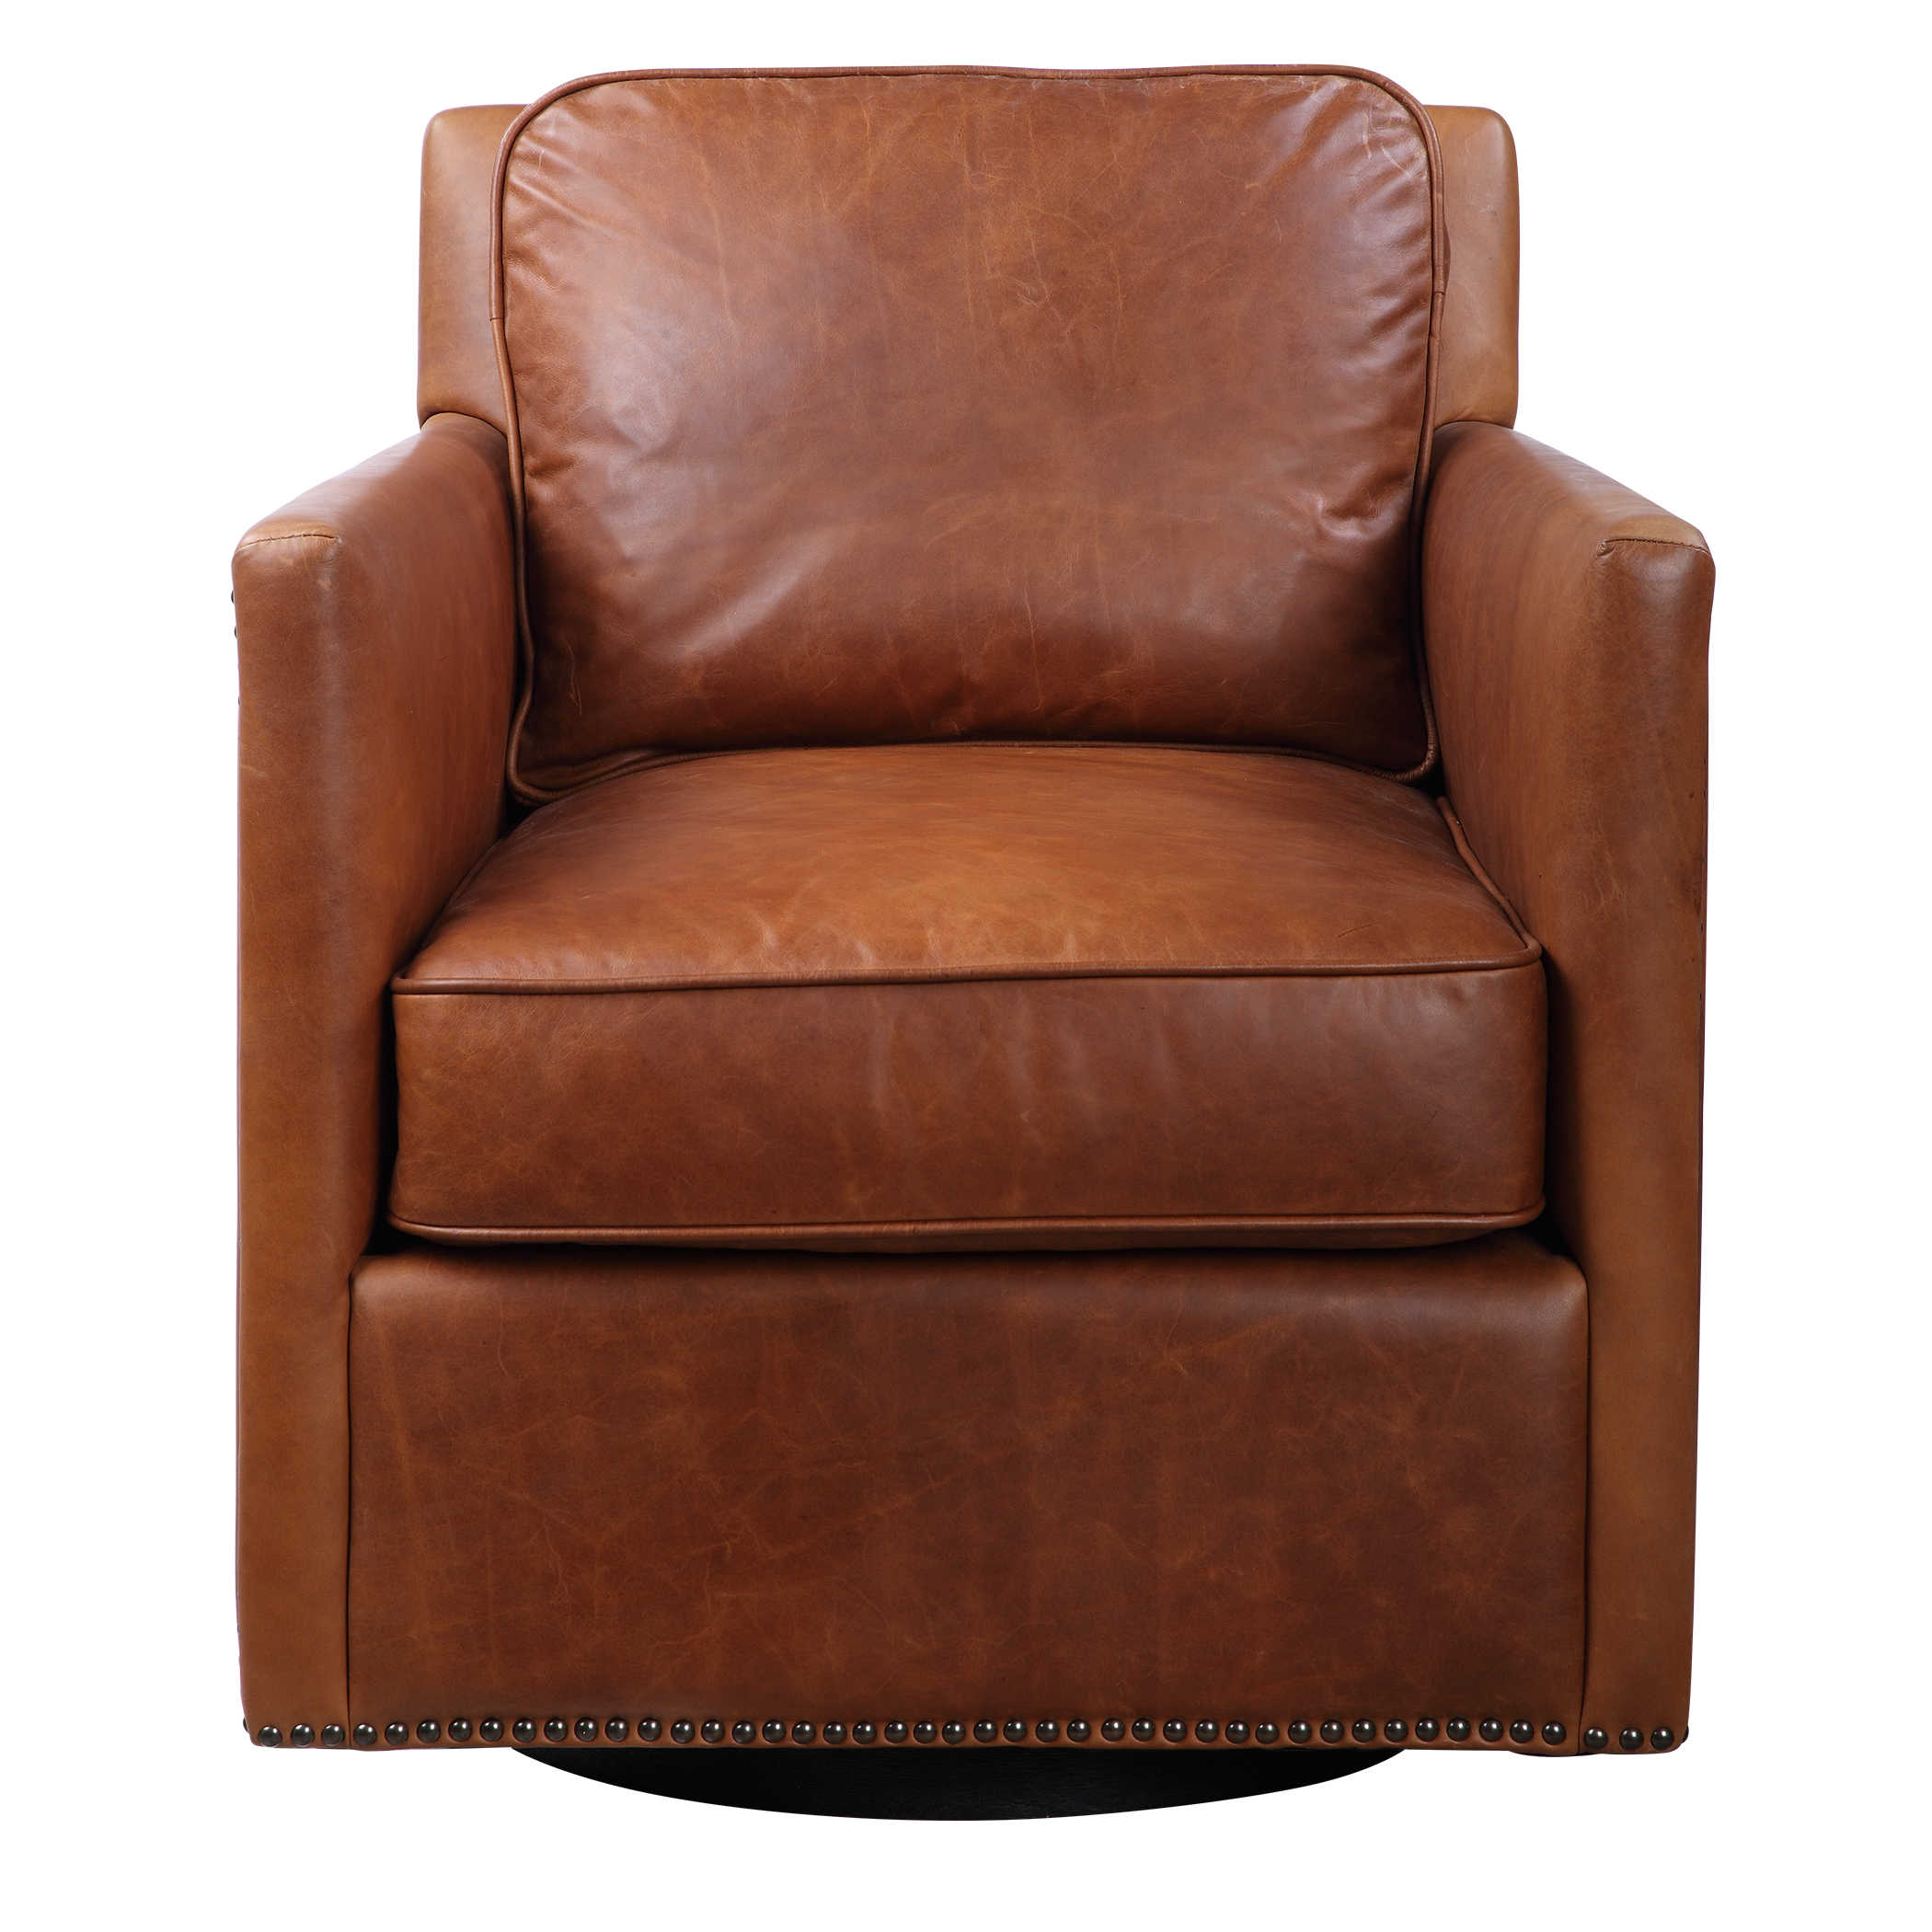 Roosevelt Swivel Chair Uttermost, Leather Swivel Rocker